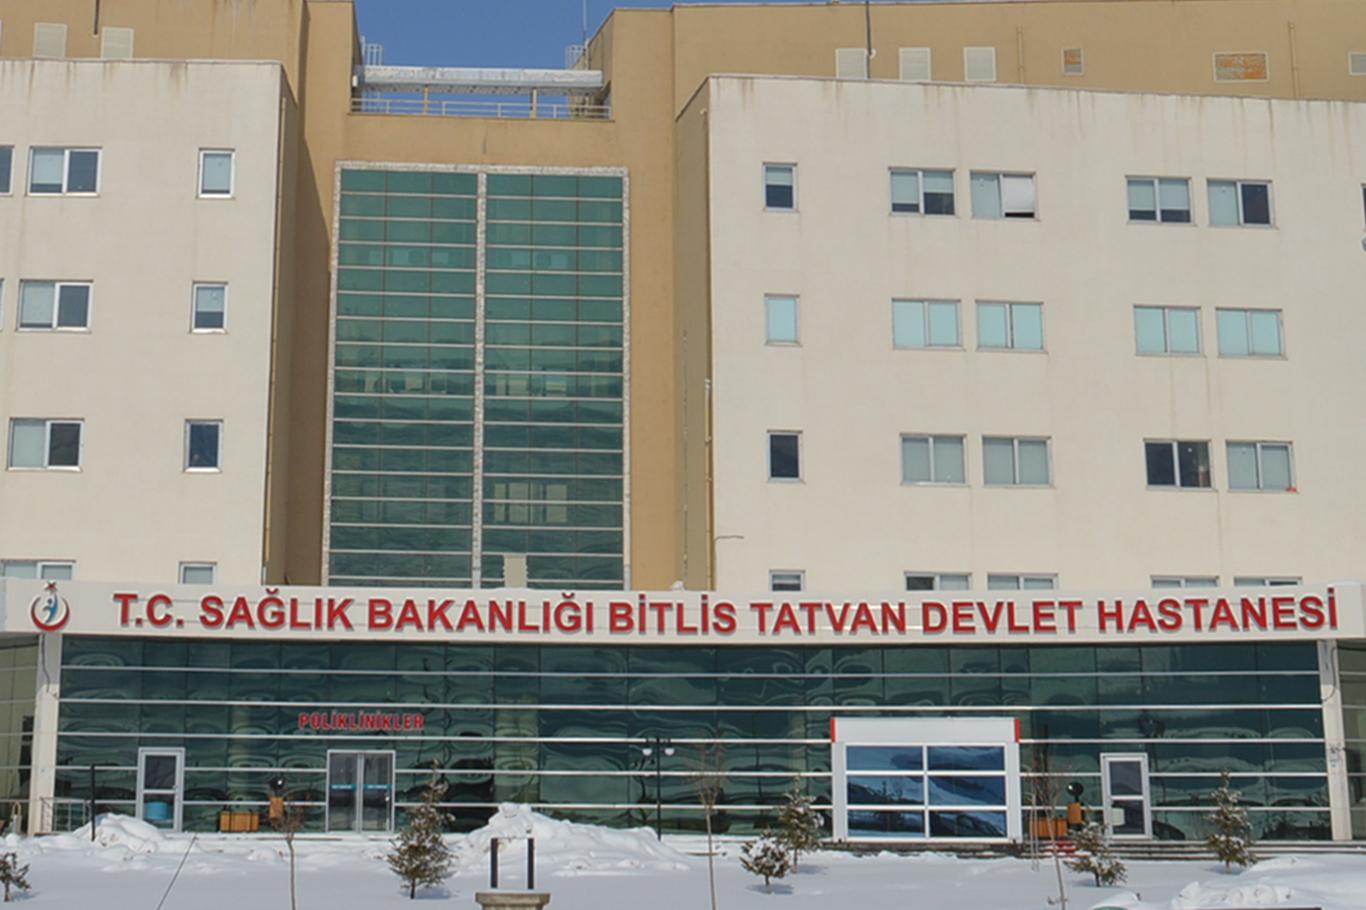 Bitlis'te çığ düştü: 2 asker hayatını kaybetti 6 asker yaralı 